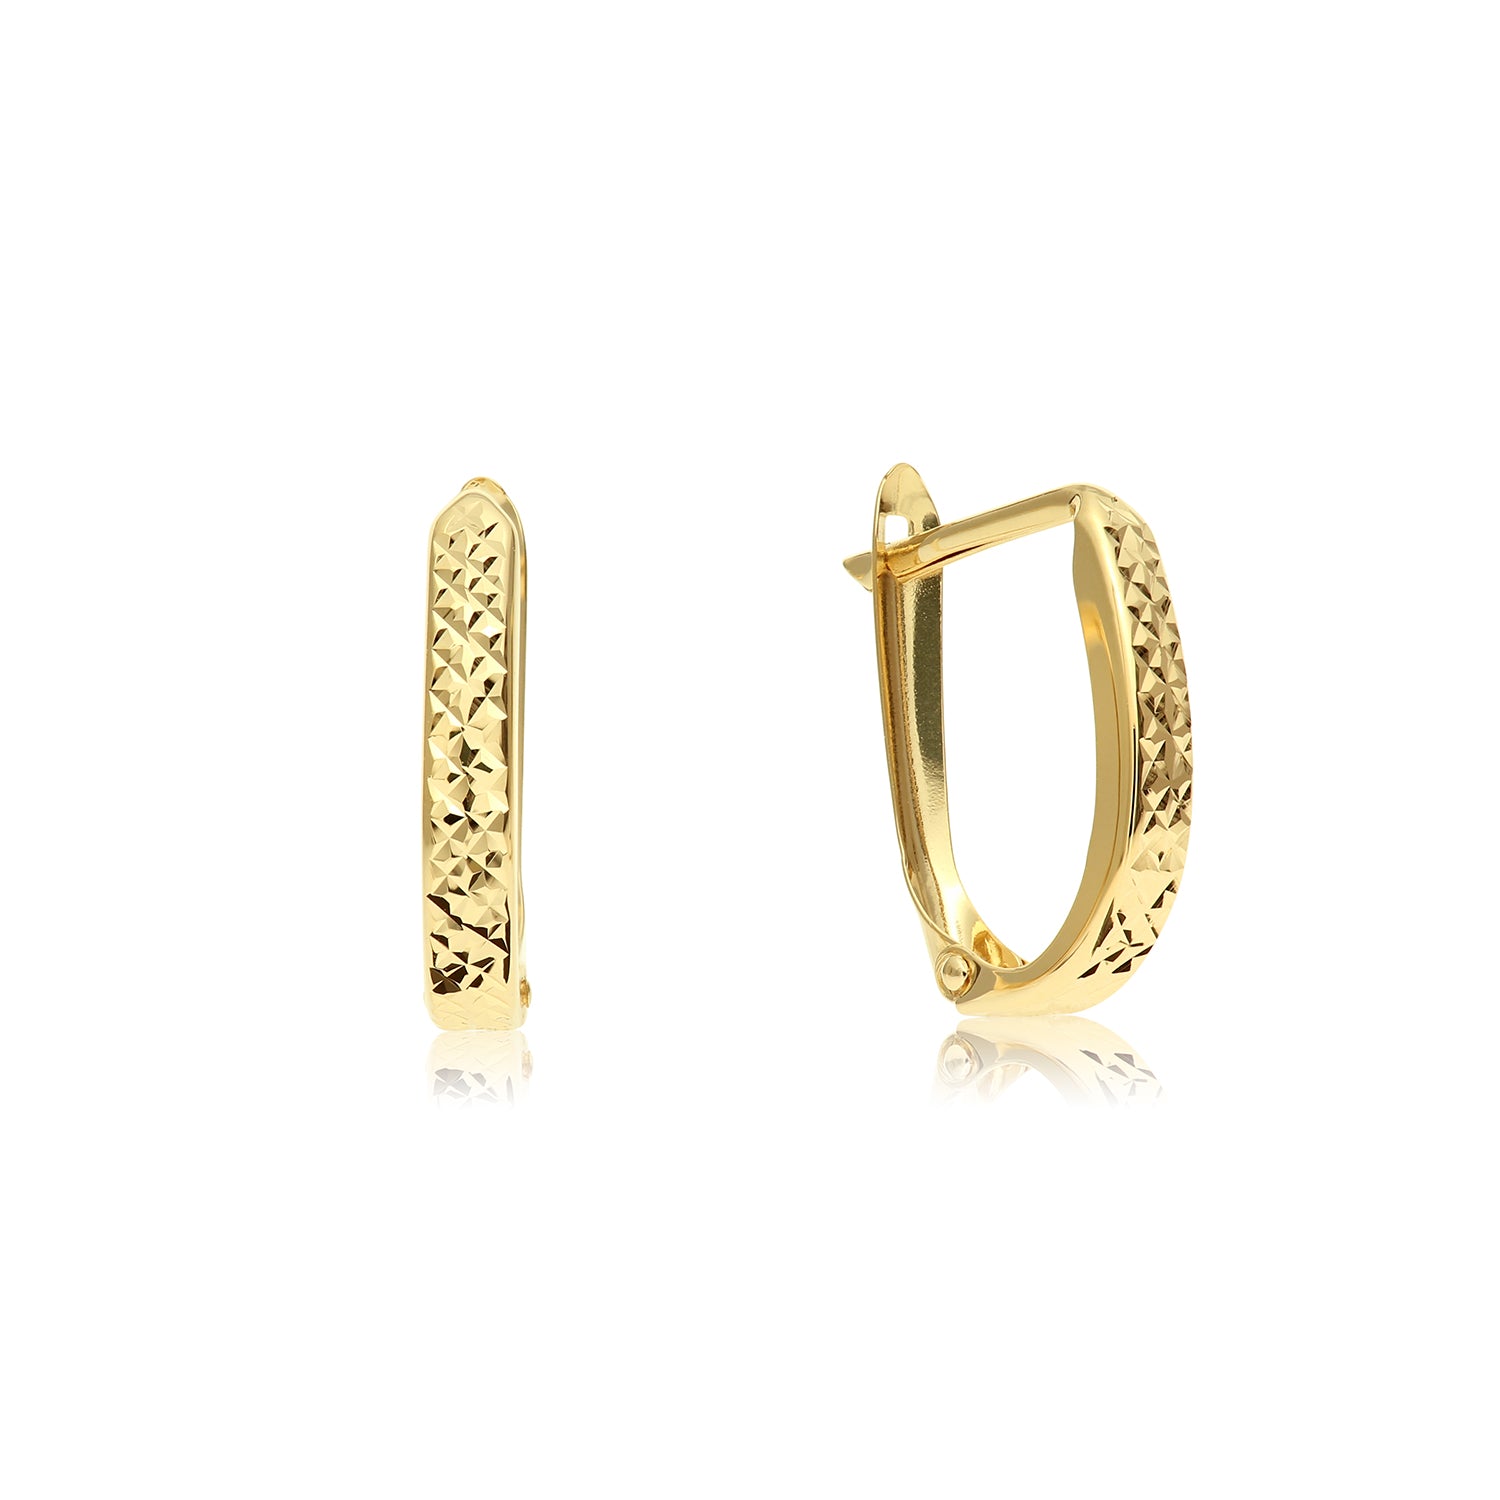 Jewel Tie 14K Yellow Gold Diamond-Cut Fancy Hollow Oval Hoop Earrings 24 X 27mm